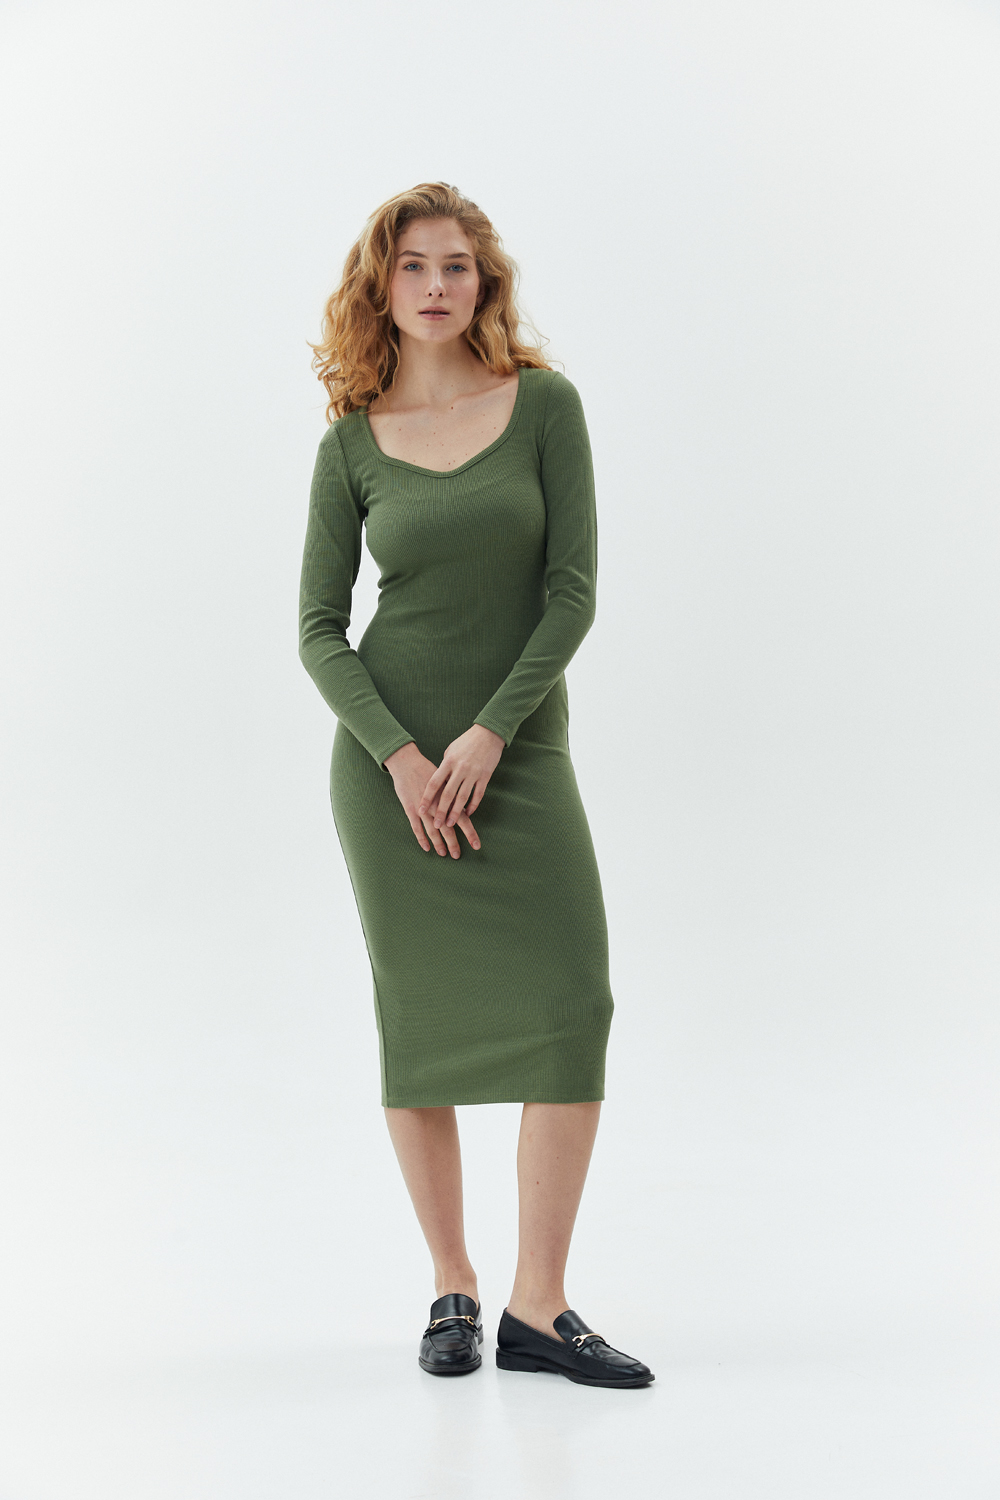 Приталена сукня з довгим рукавом оливкового кольору